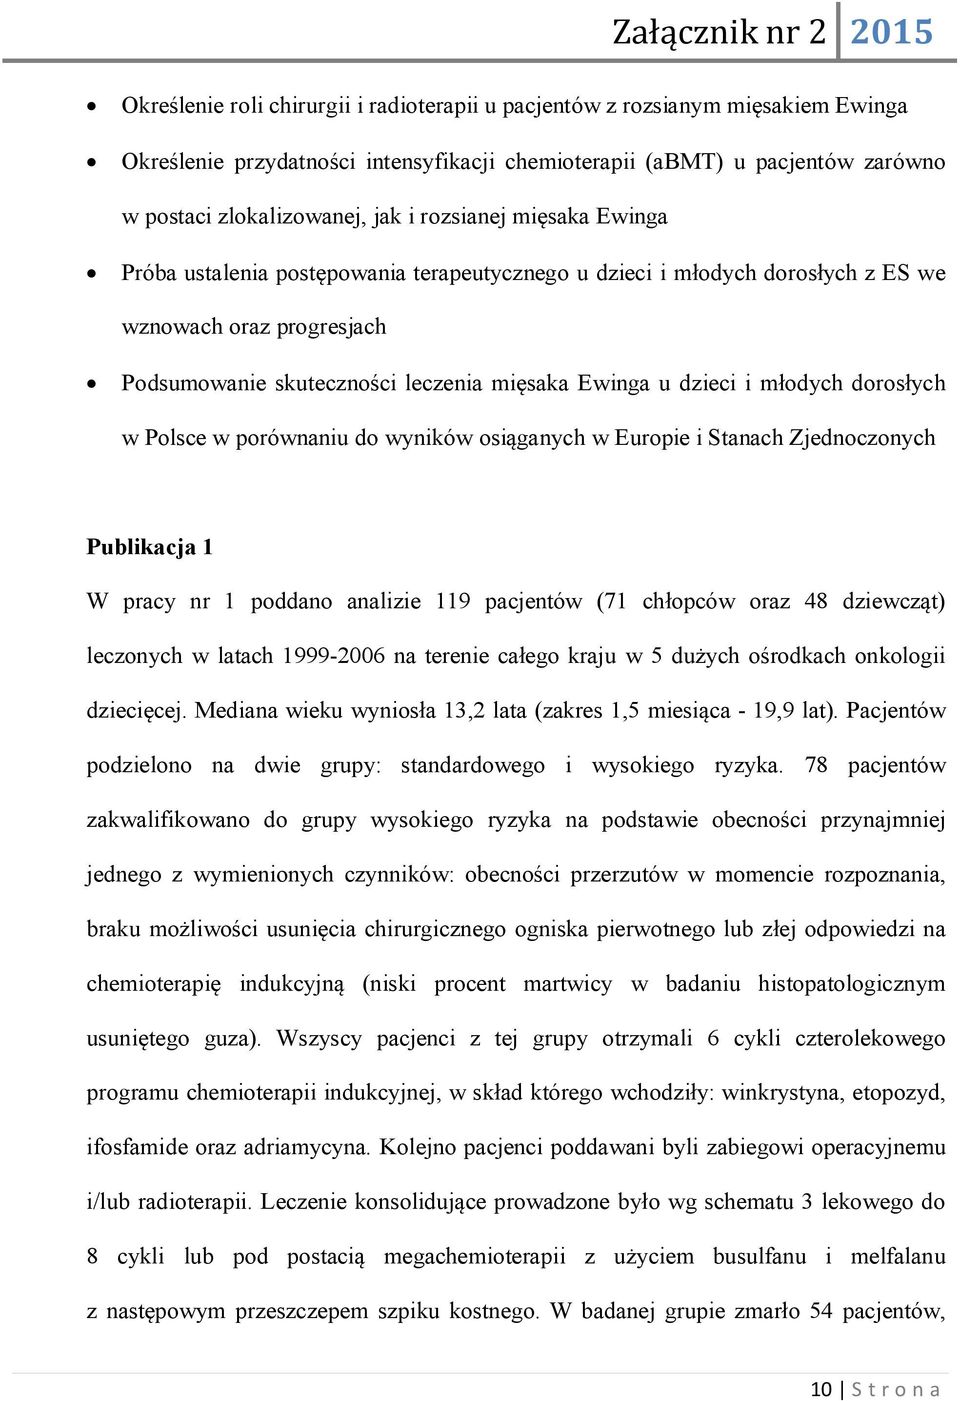 młodych dorosłych w Polsce w porównaniu do wyników osiąganych w Europie i Stanach Zjednoczonych Publikacja 1 W pracy nr 1 poddano analizie 119 pacjentów (71 chłopców oraz 48 dziewcząt) leczonych w